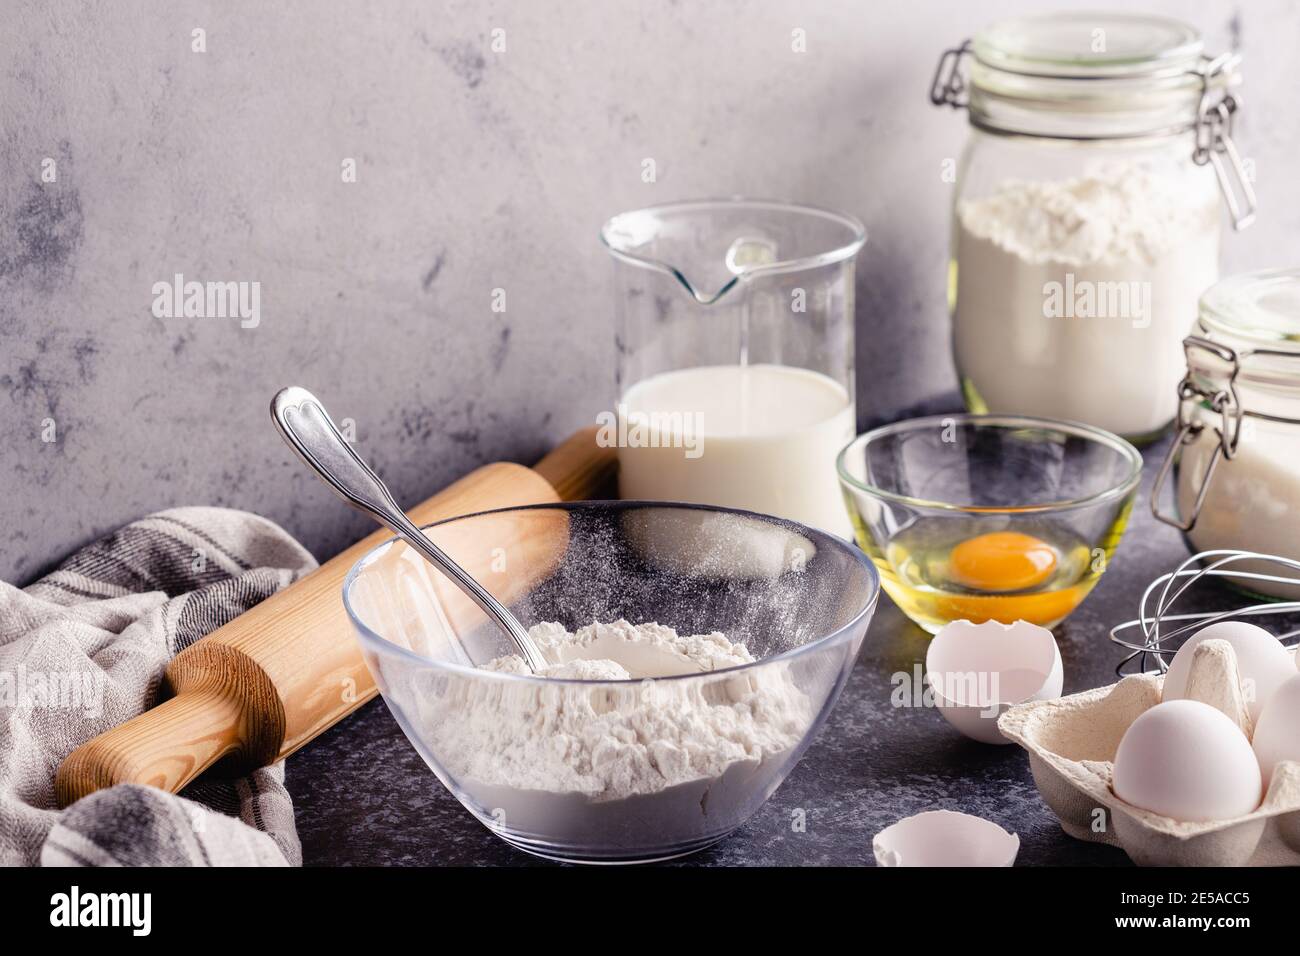 Background. Kochzutaten für Teig, Eier, Mehl, Zucker, Milch. Stockfoto